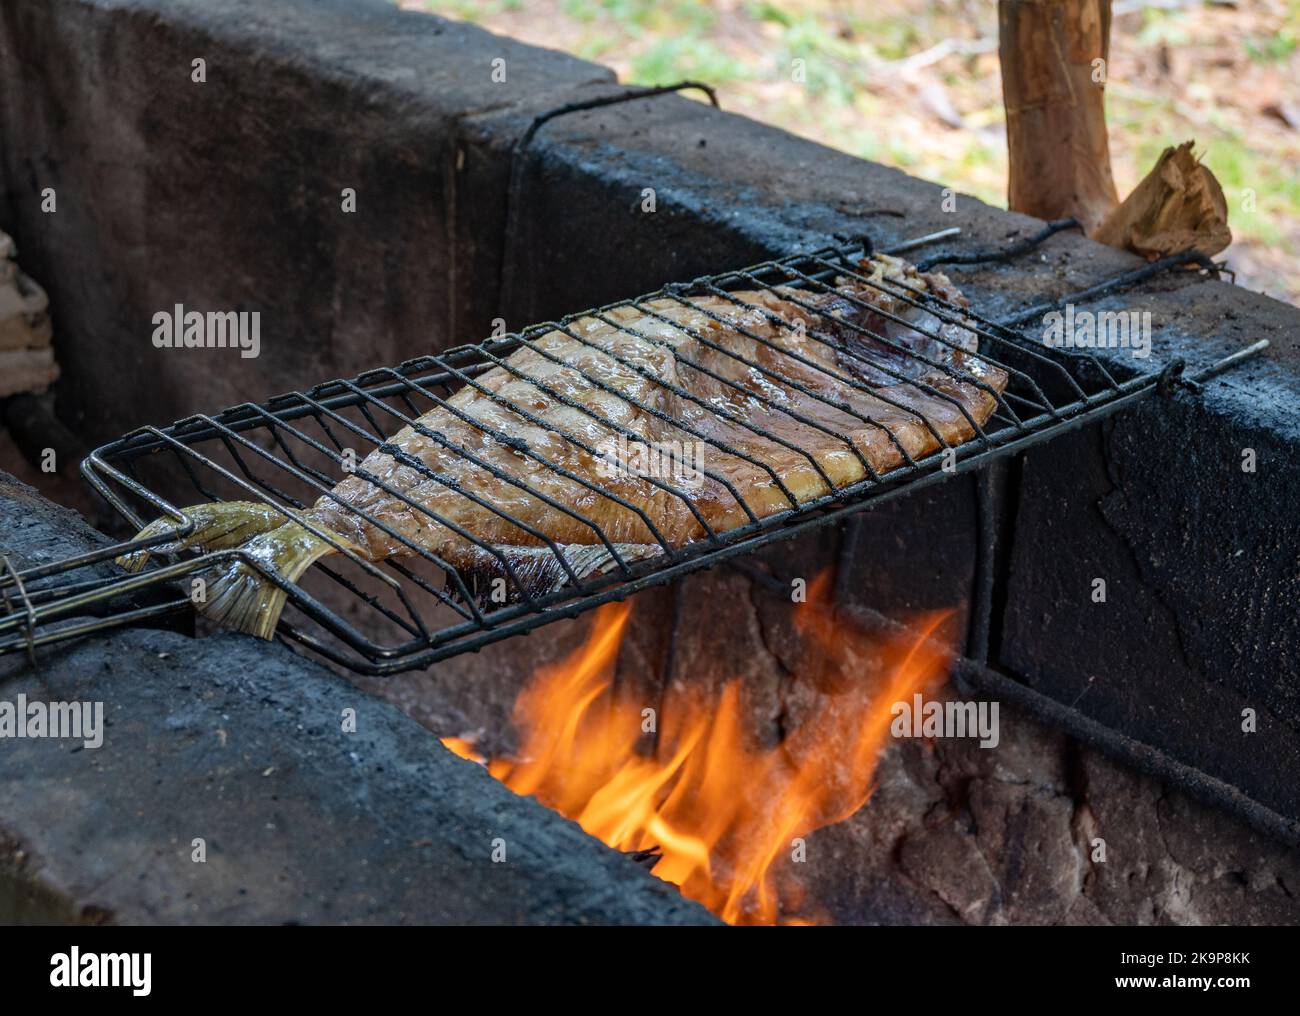 Un grand poisson d'eau douce est grillé au feu dans un style brésilien traditionnel. Manaus, Amazonas, Brésil Banque D'Images